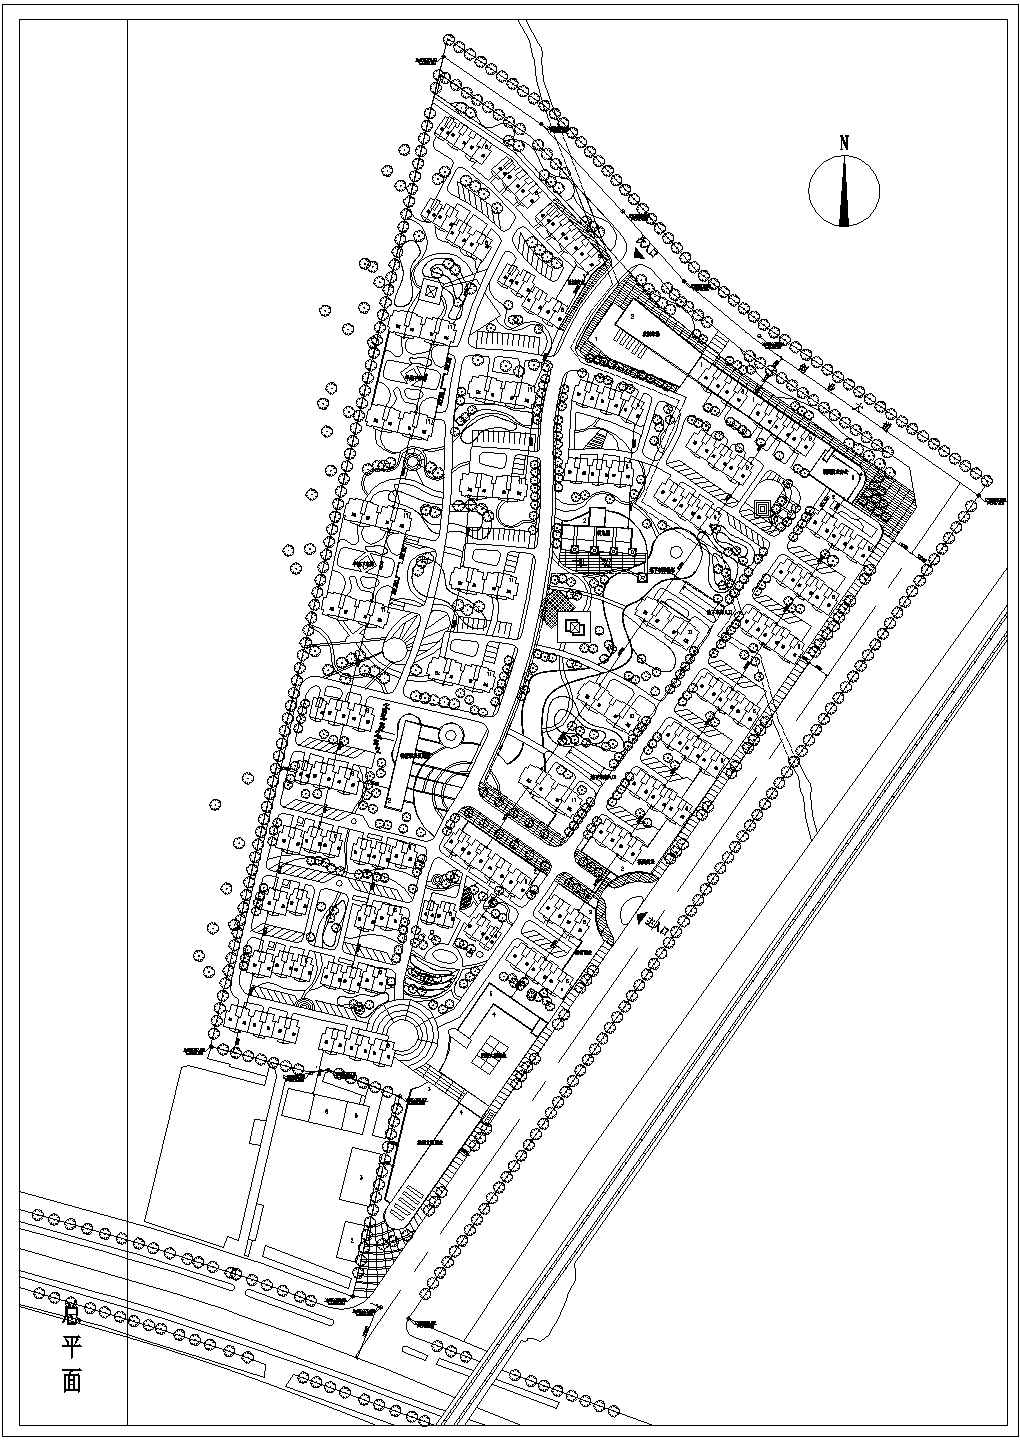 【南阳市】某居住小区规划建设建筑平面图